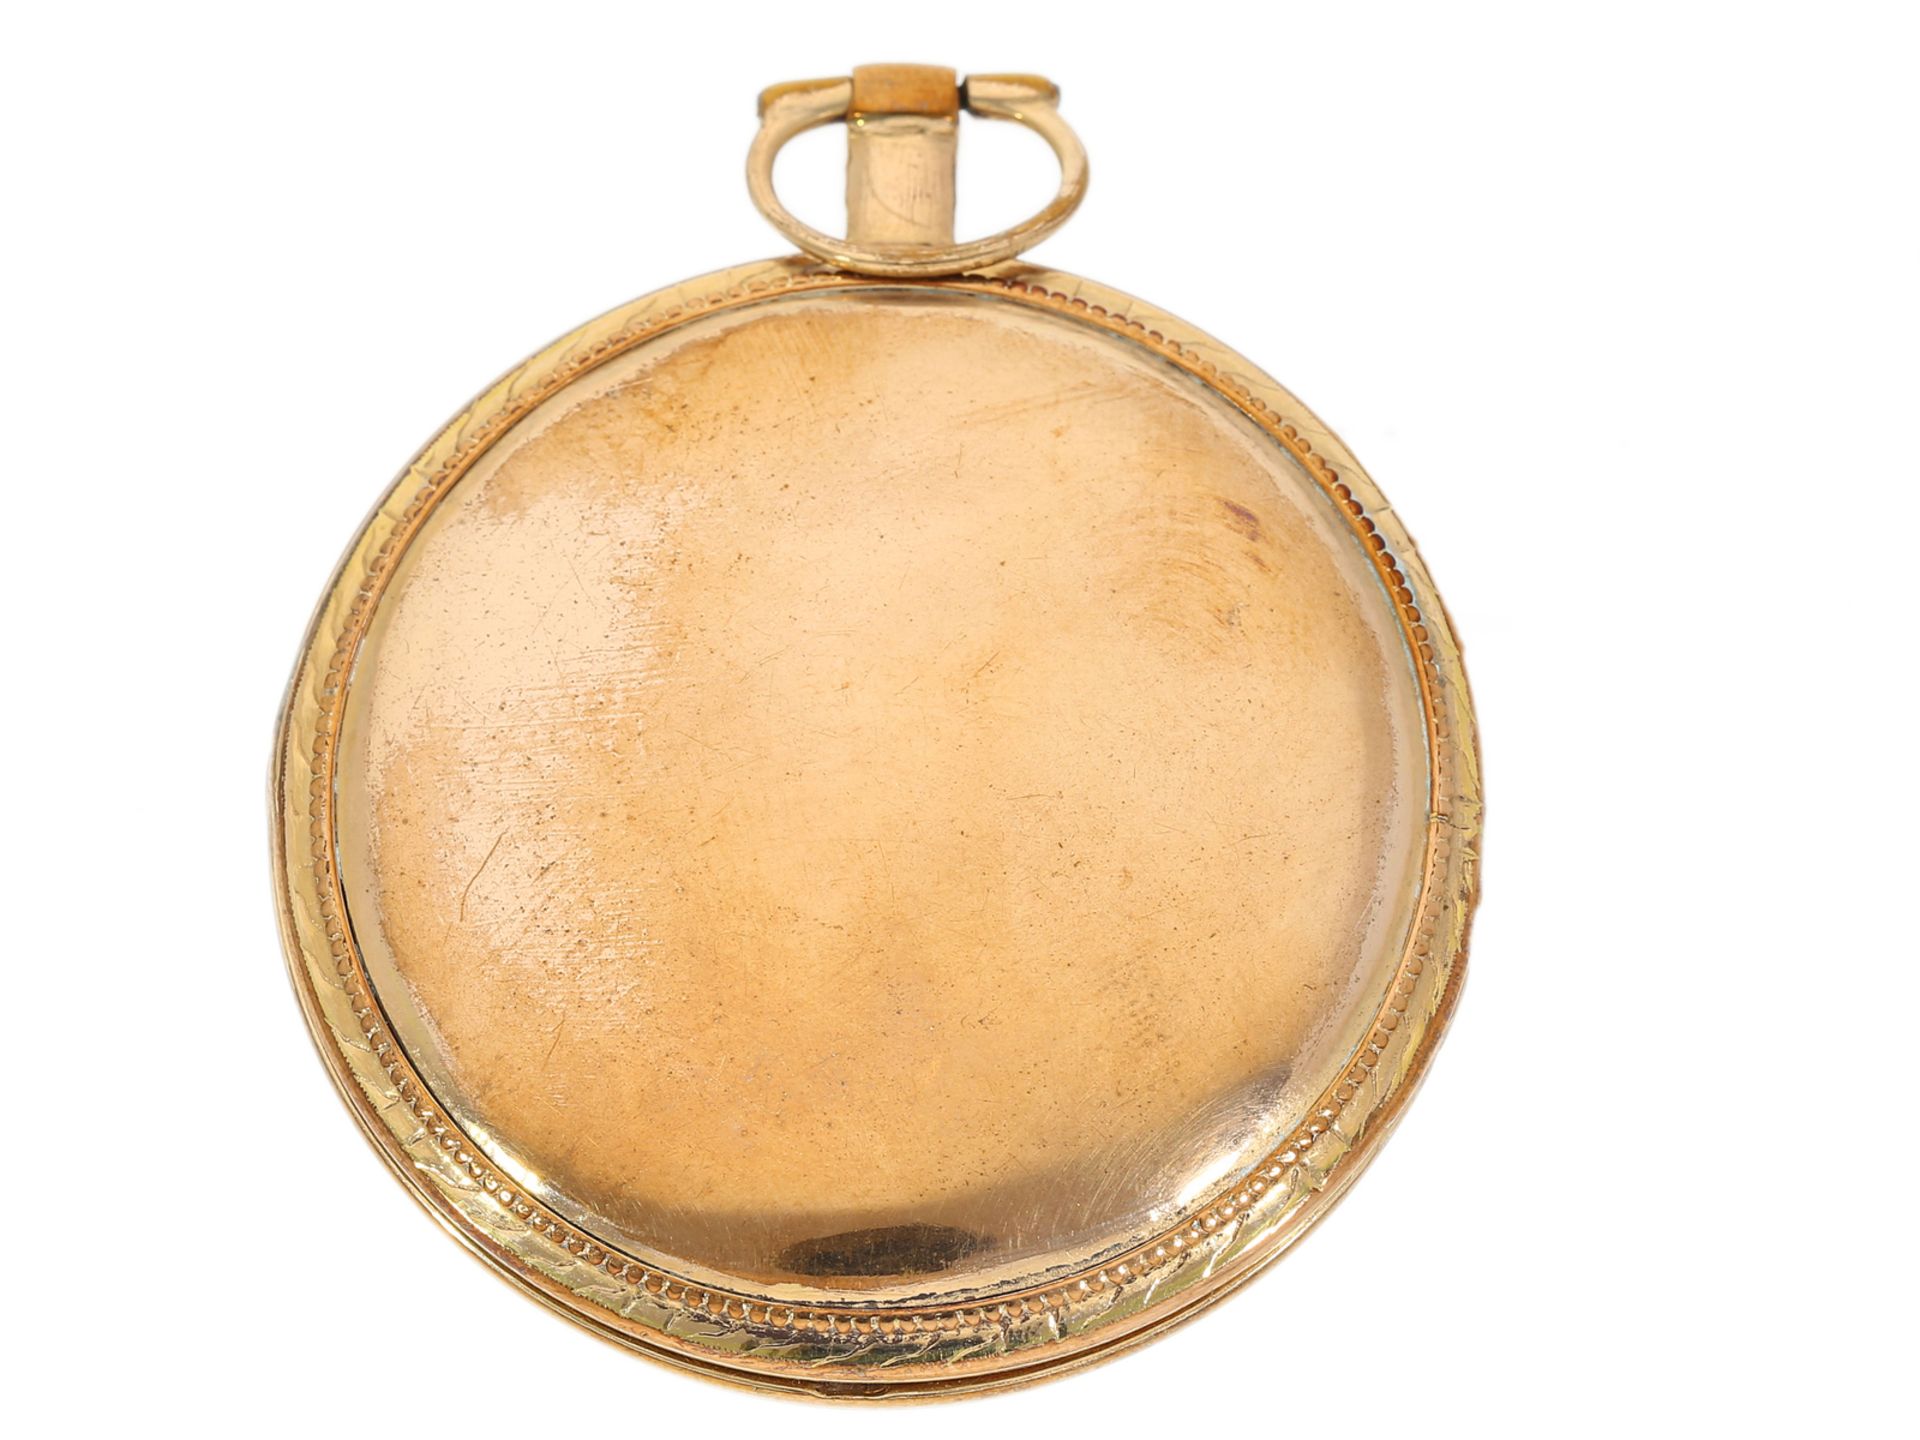 Interessante frühe Taschenuhr, signiert Mallet a Paris, ca.1824 - Bild 2 aus 4